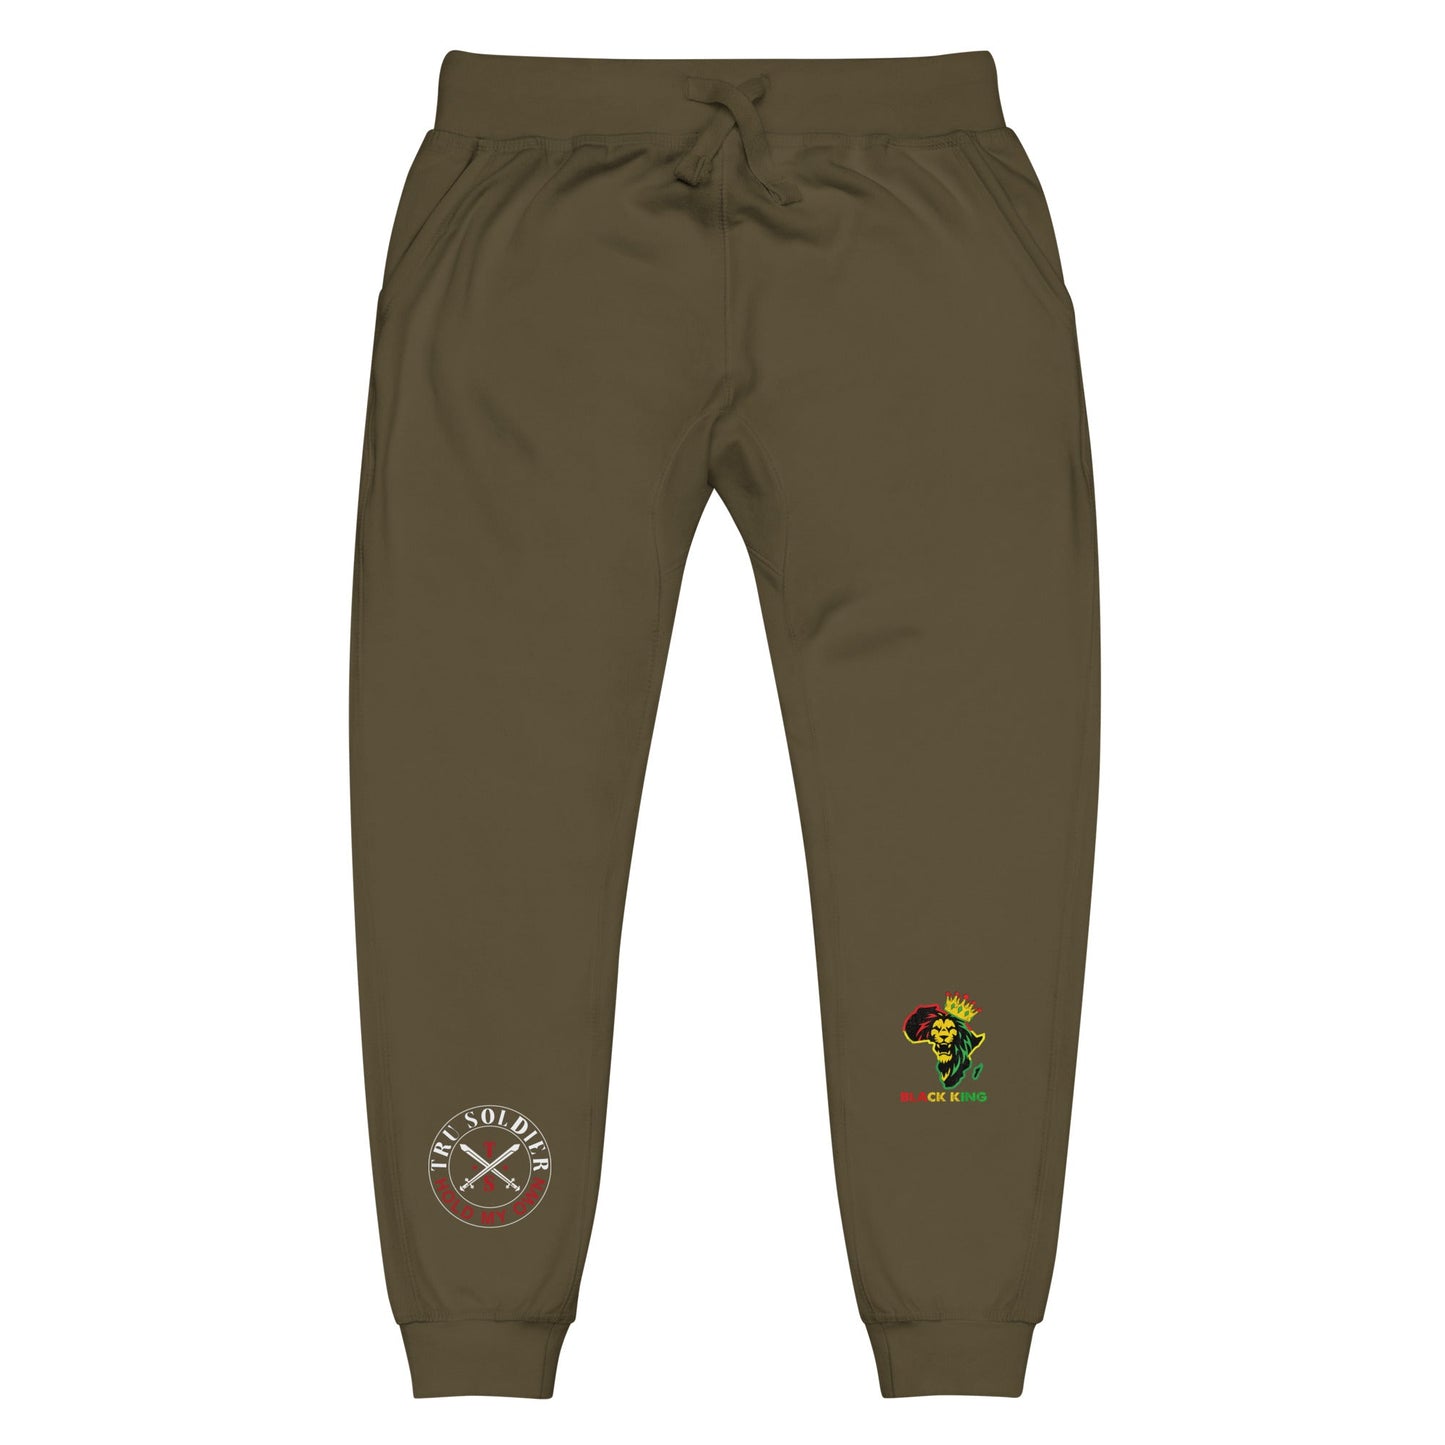 Tru Soldier Sportswear  Military Green / XS Black King fleece sweatpants